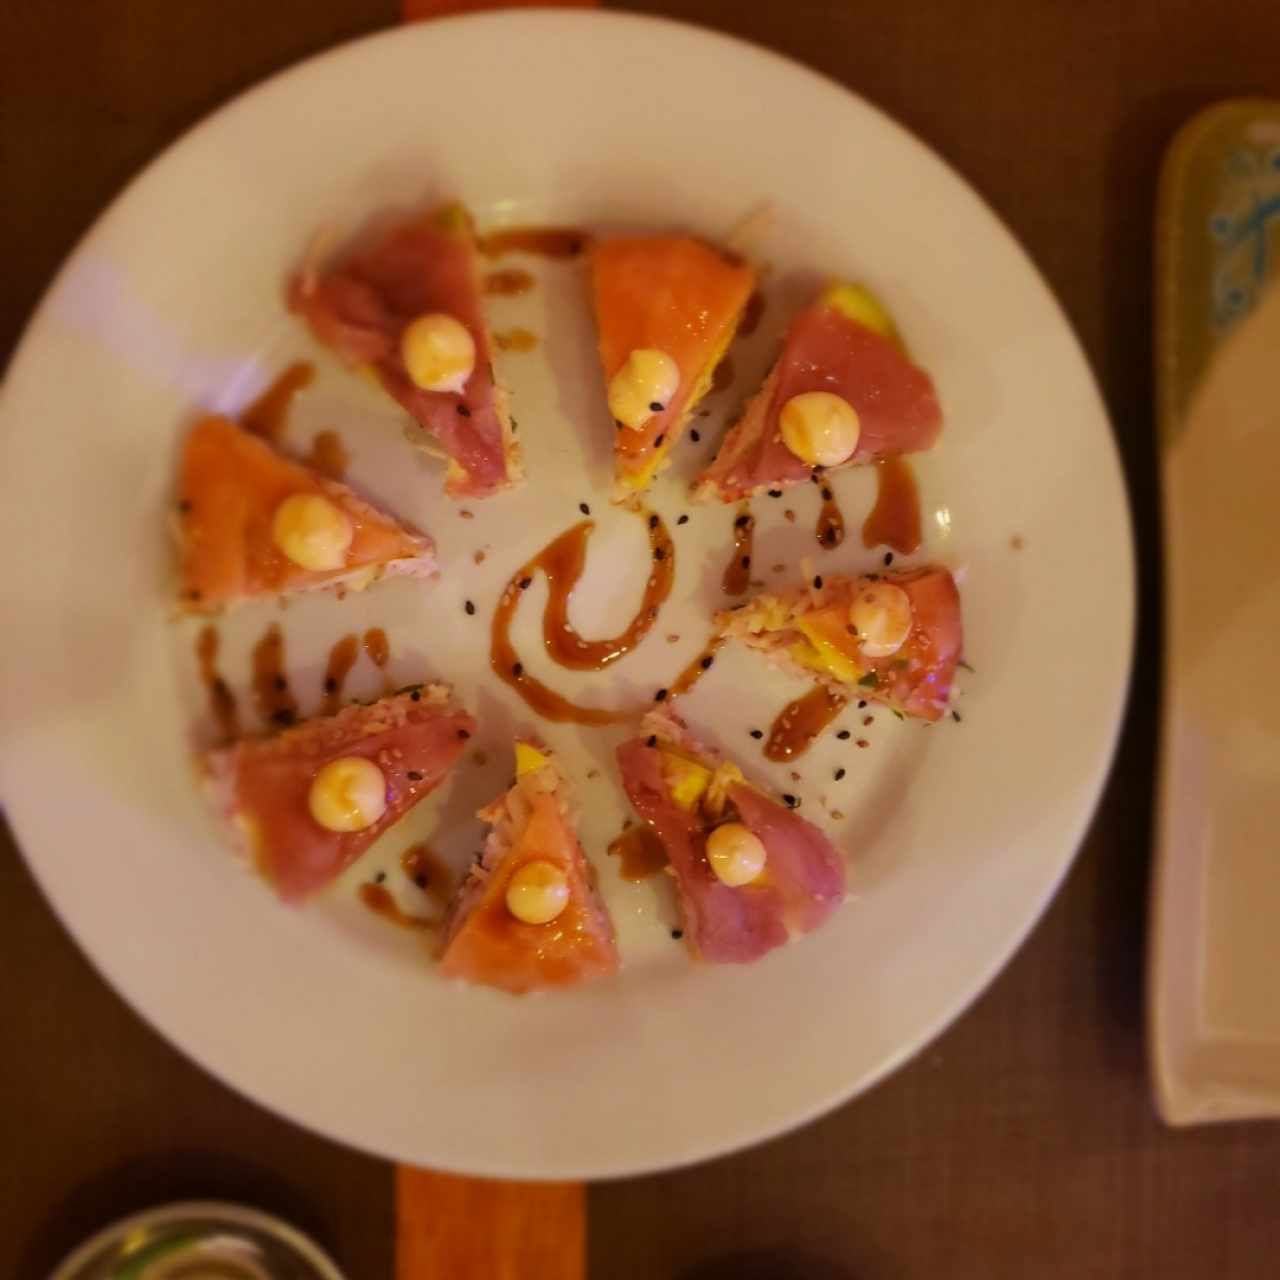 ENTRADAS JAPONESAS - Sushi Pizza Mixta